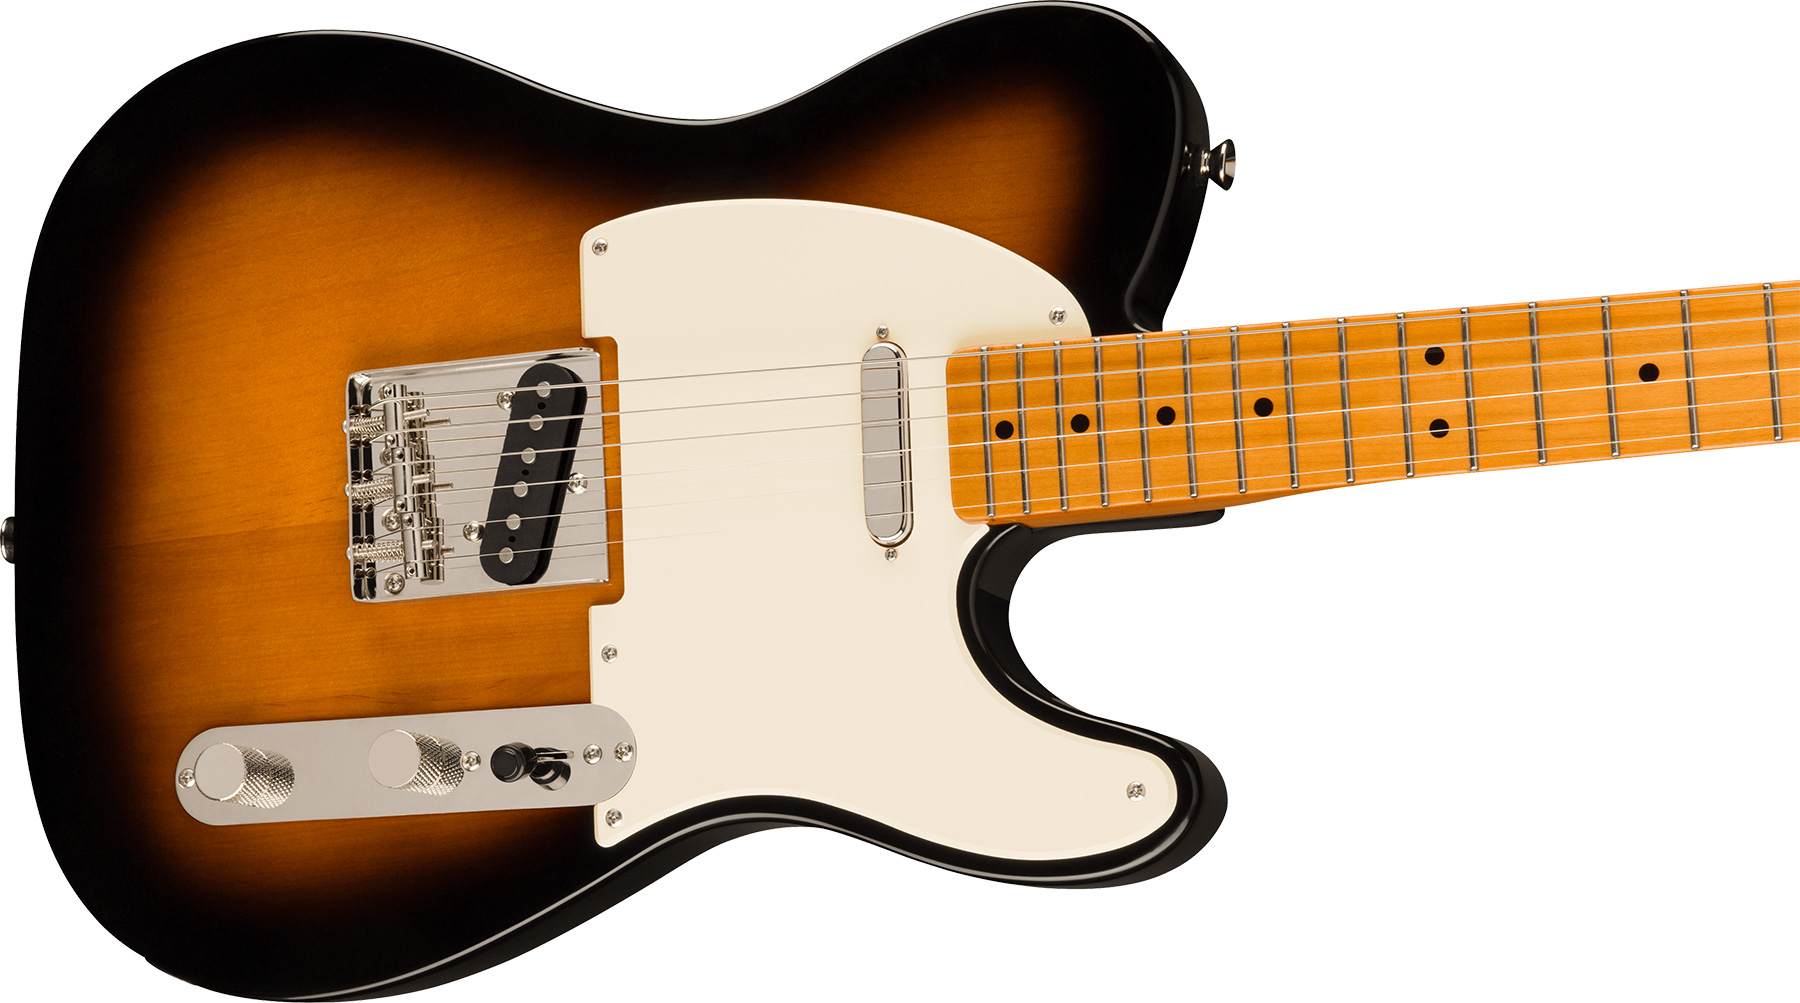 Squier Tele '50s Parchment Pickguard Classic Vibe Fsr 2s Ht Mn - 2-color Sunburst - Tel shape electric guitar - Variation 2